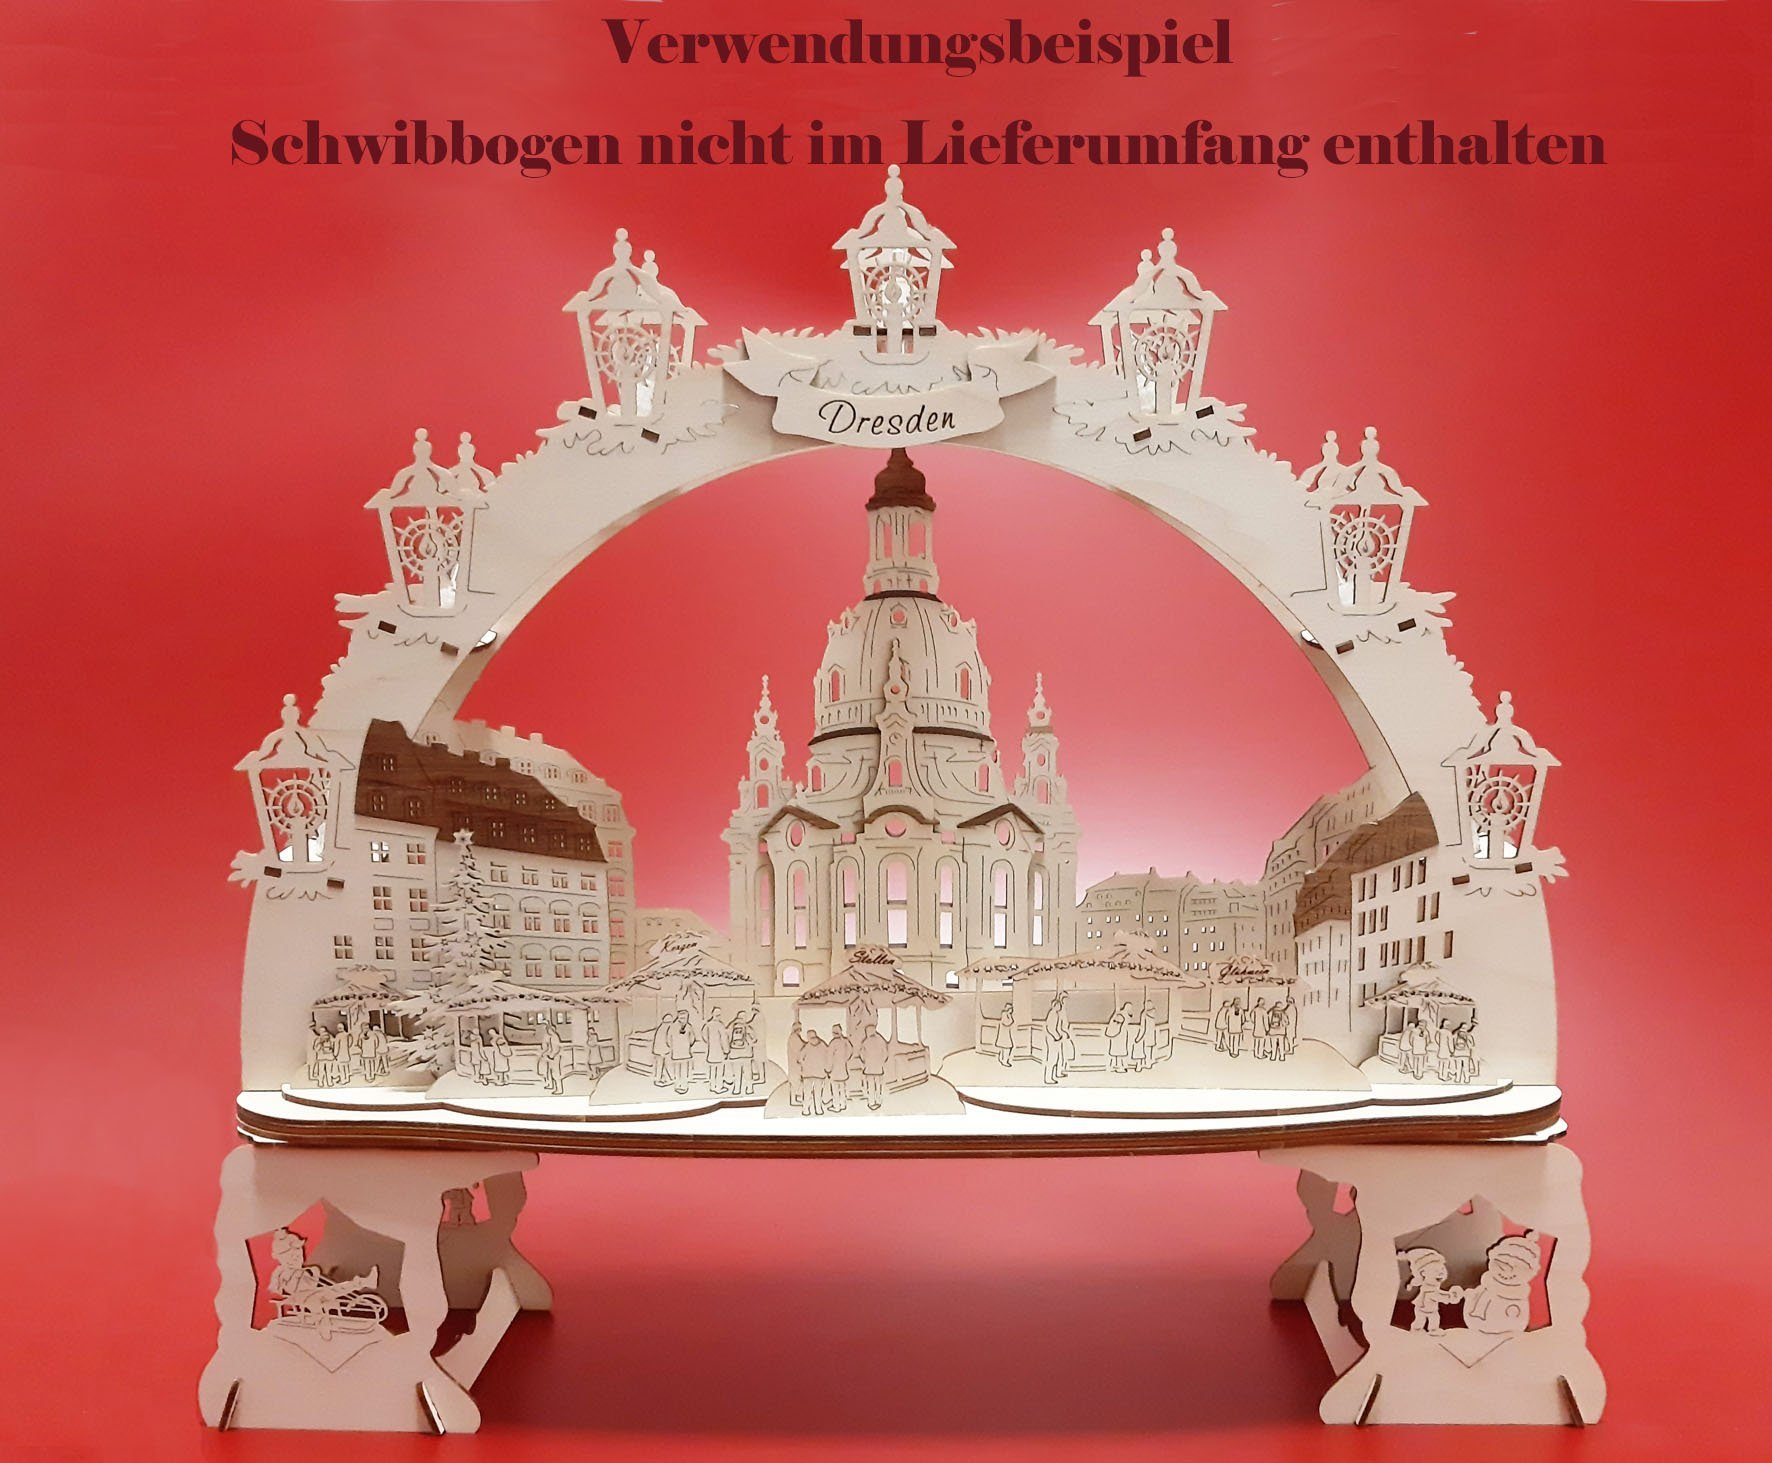 DeColibri Schwibbogen-Fensterbank Schwibbogen Erhöhung Engelchor, Ost Weihnachten Handwerkskunst leichter - Erzgebirge Bausatz